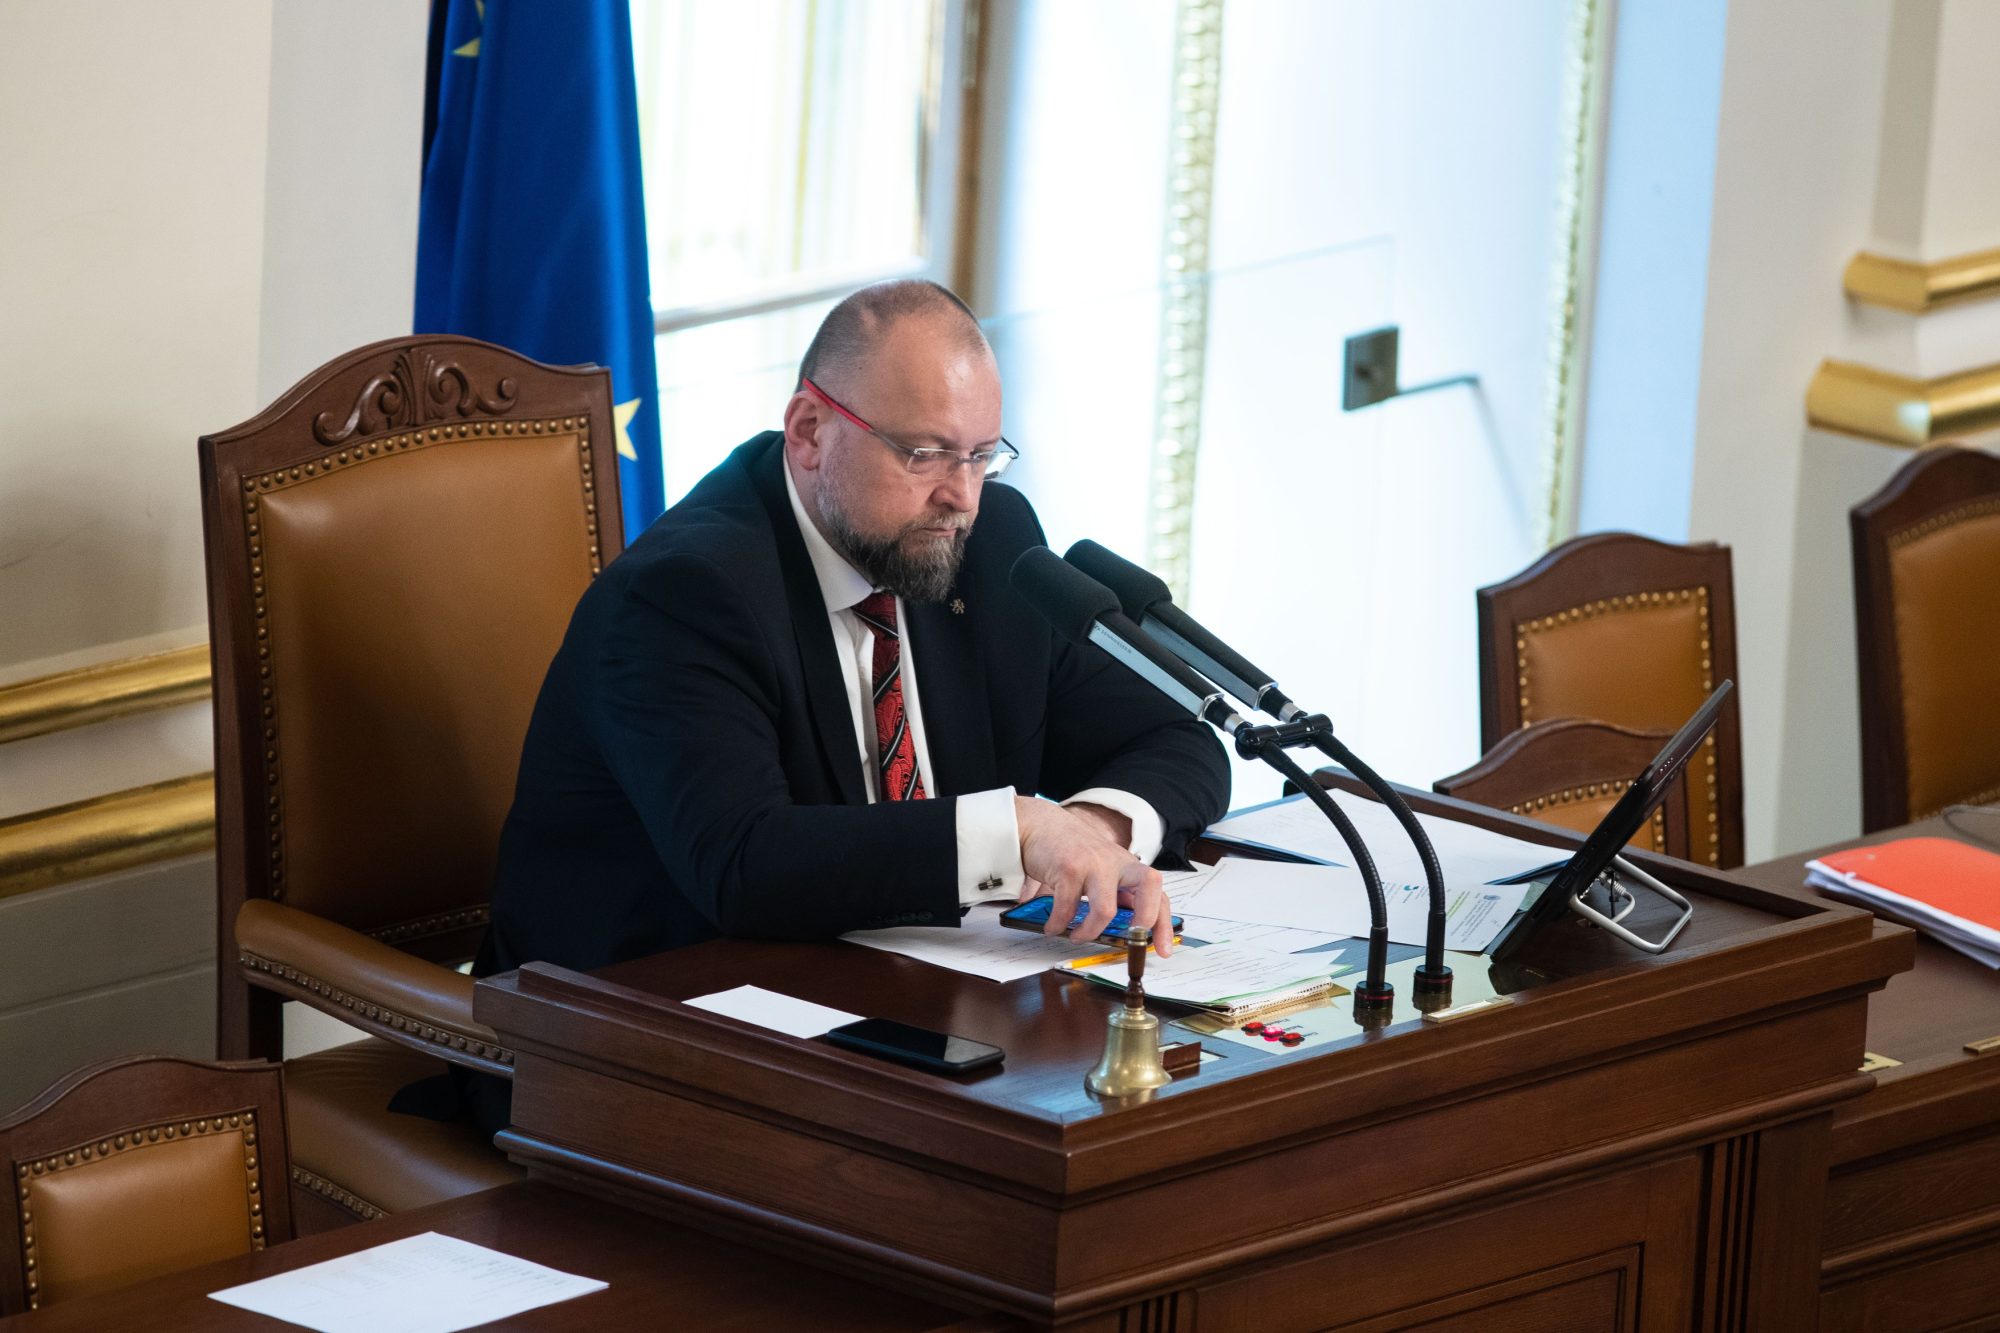 Místopředseda Sněmovny Jan Bartošek (KDU-ČSL) jako předsedající schůze | Foto: Ladislav Krivan | Zdroj: Profimedia